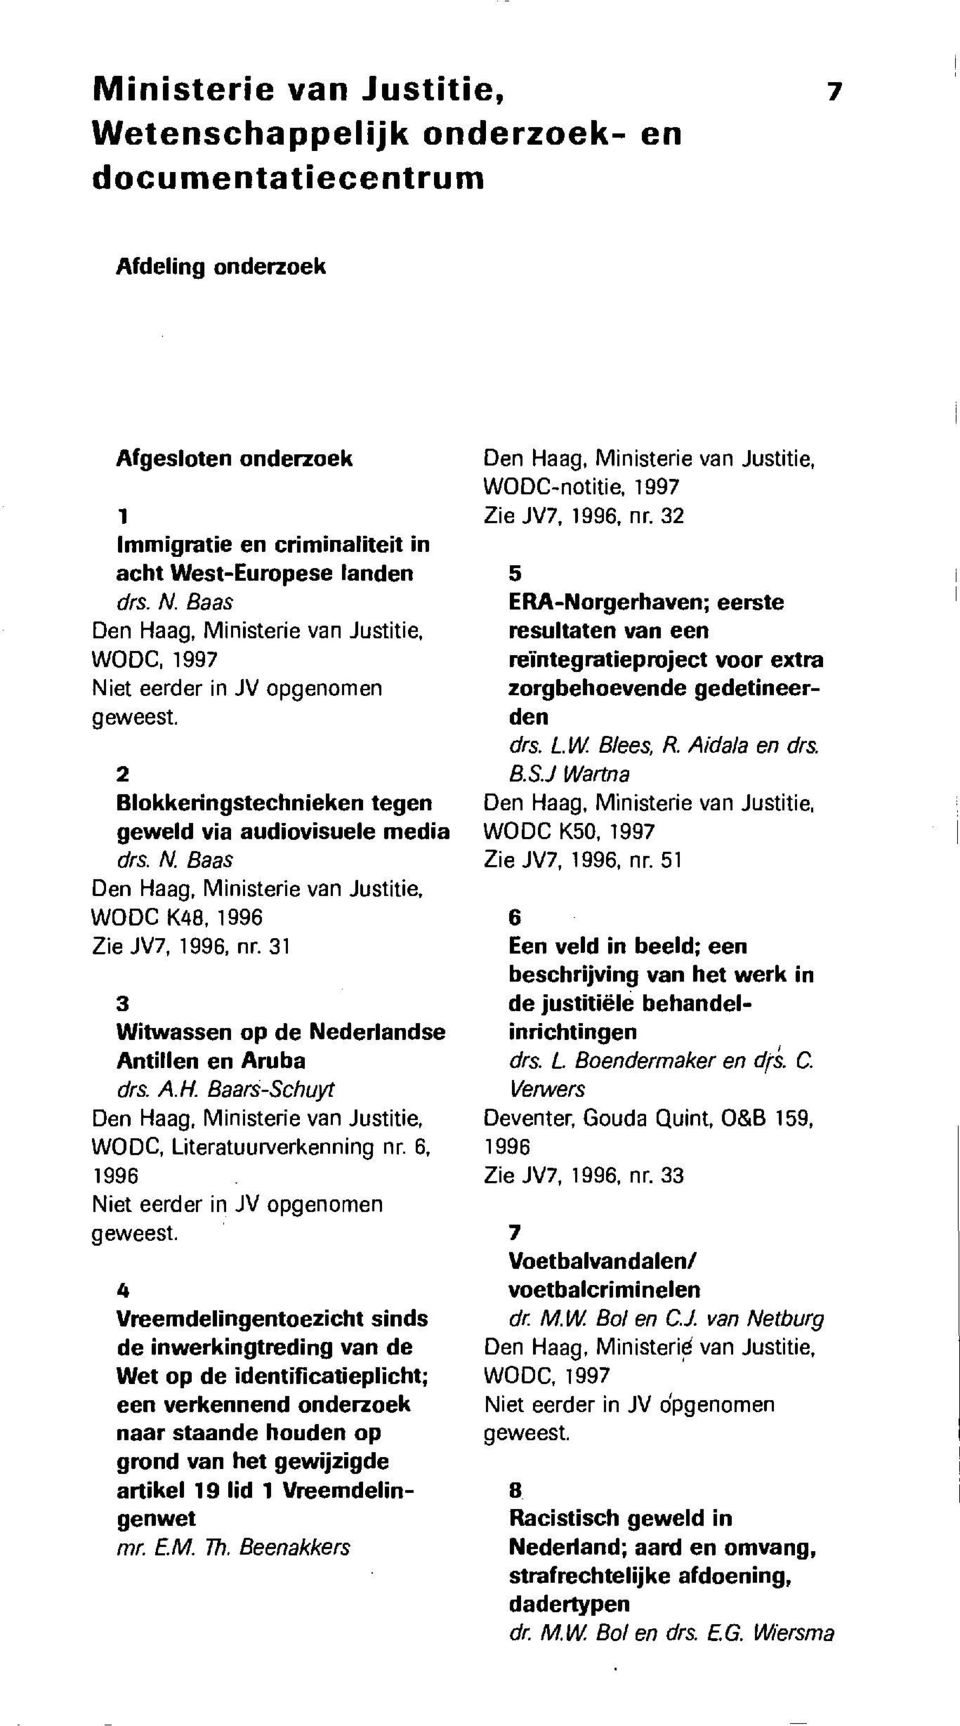 31 3 Witwassen op de Nederlandse AntiIlen en Aruba drs. A.H. Baars-Schuyt Den Haag, Ministerie van Justitie, WODC, Literatuurverkenning nr. 6, 1996 Niet eerder in JV opgenomen geweest.